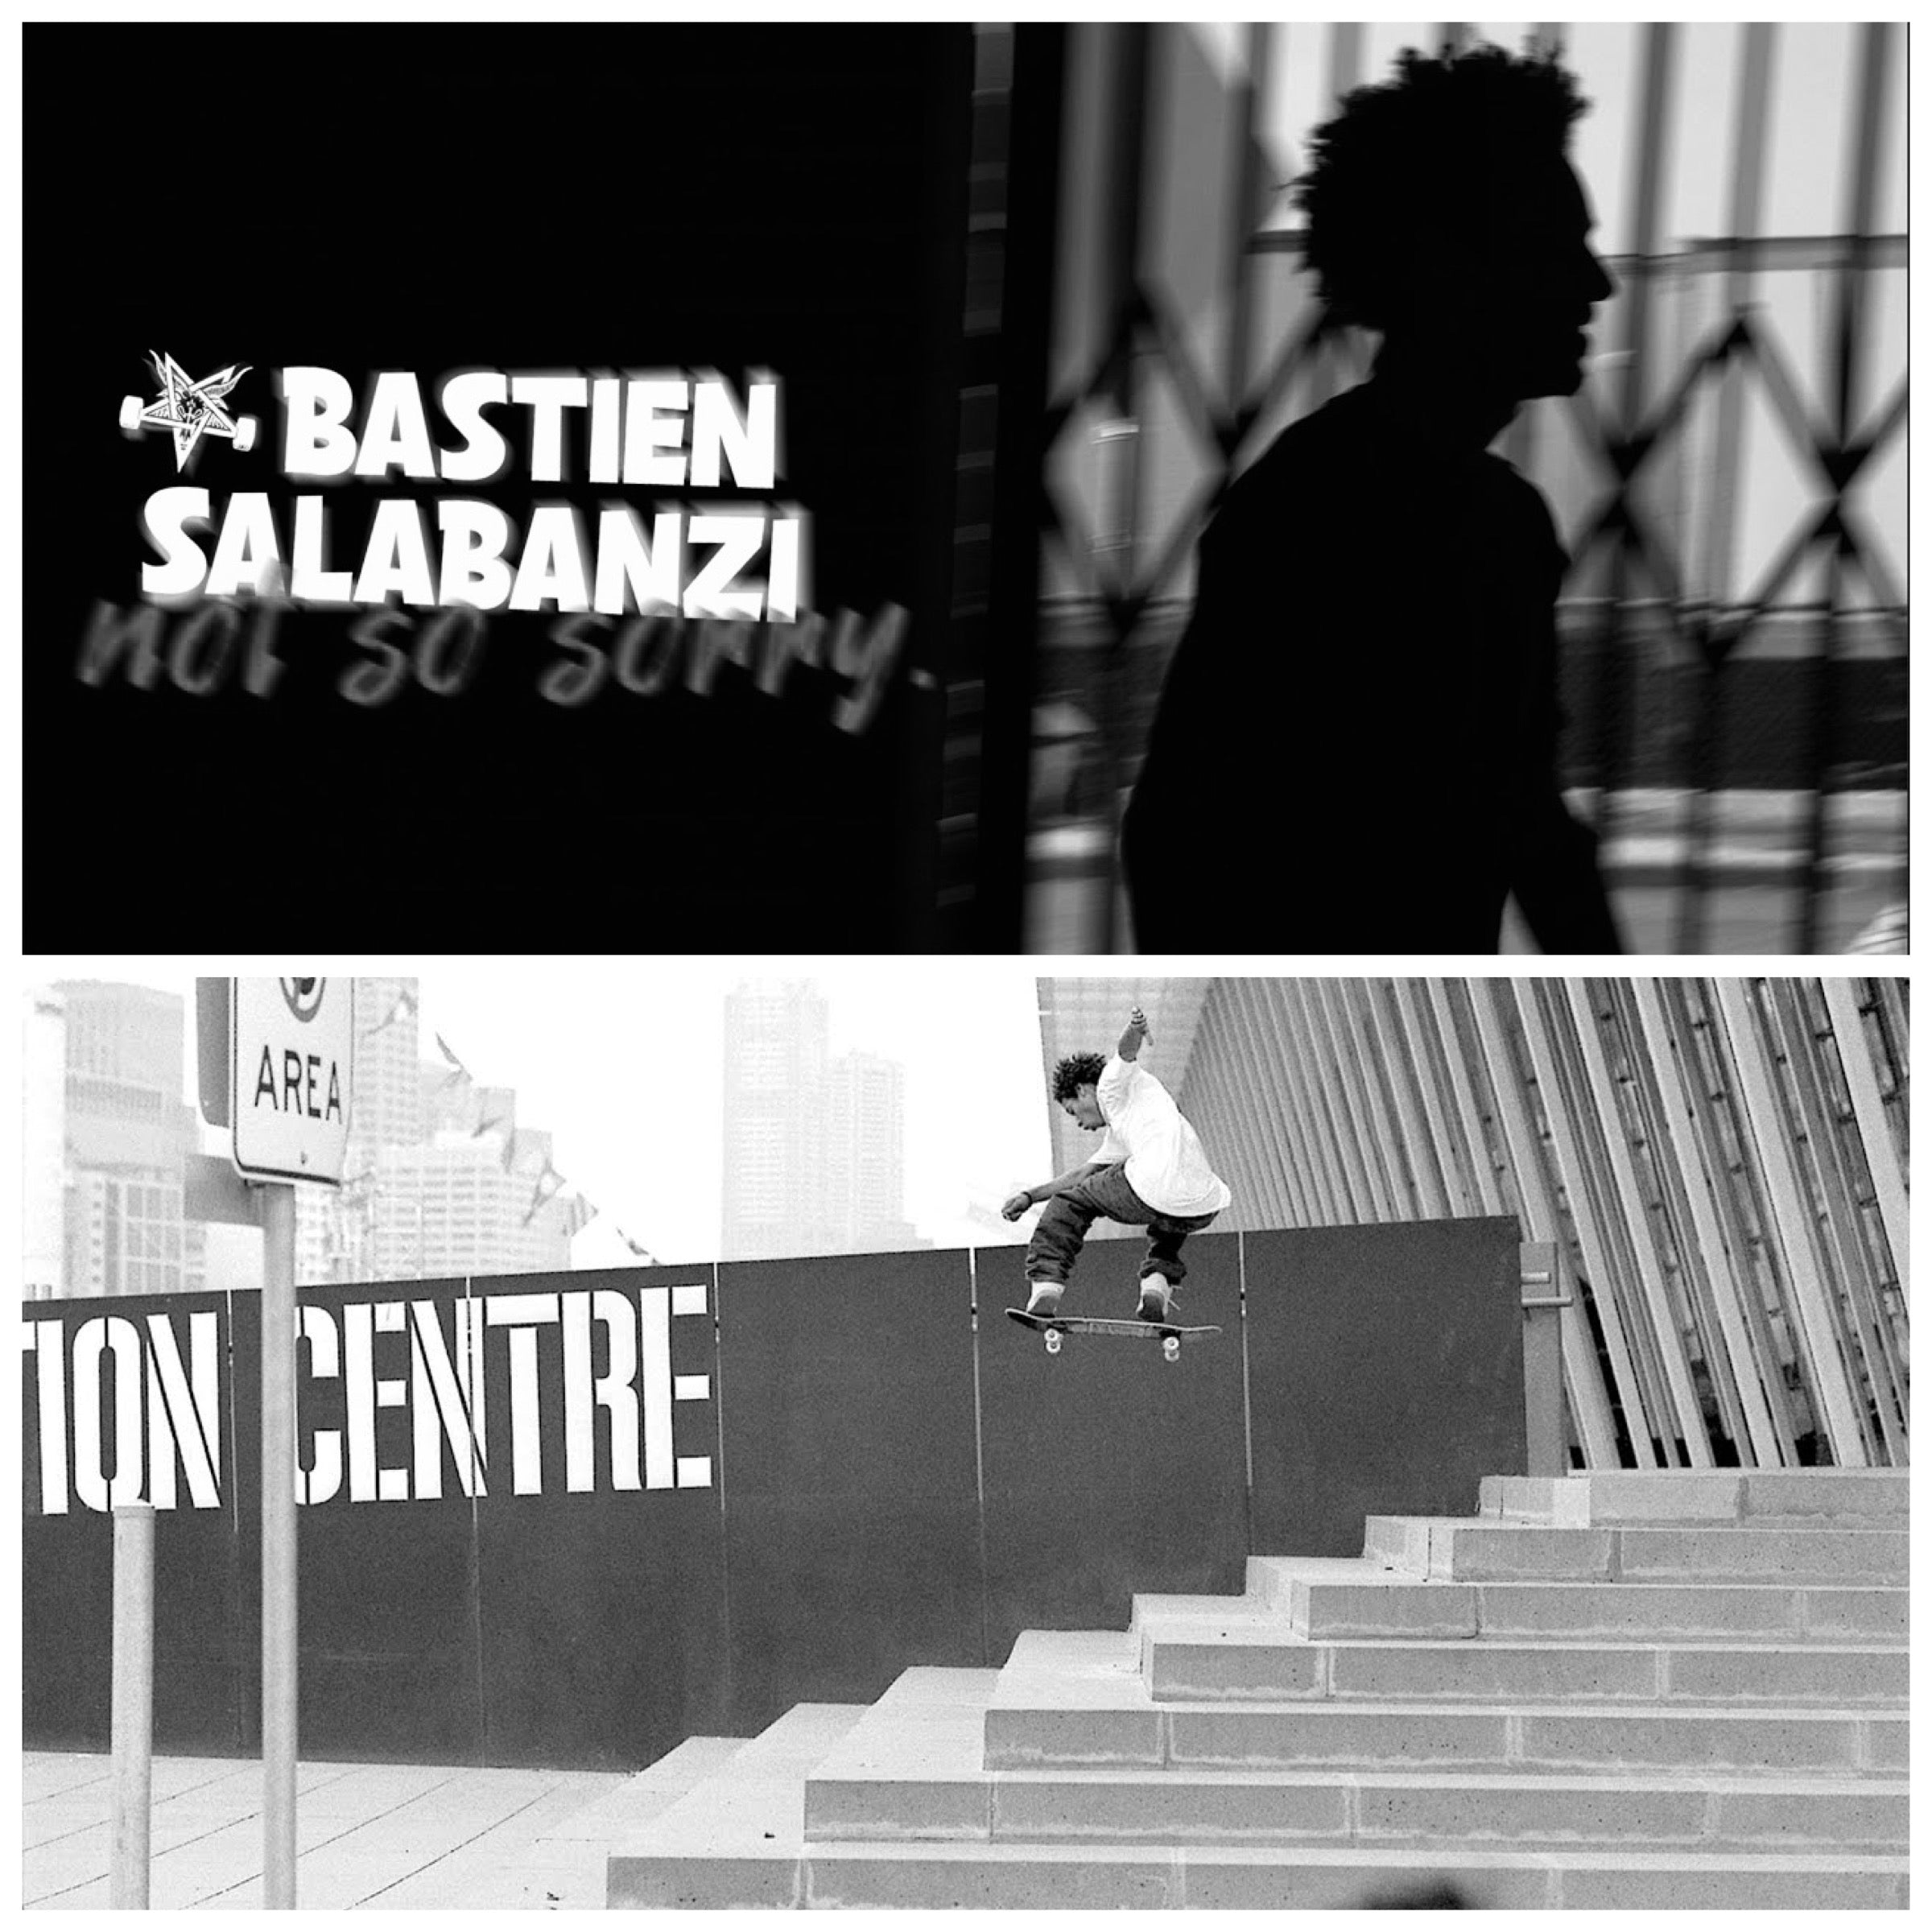 Xxxcom Boy Boy - Bastien Salabanzi Is Back With 'Not So Sorry' Part